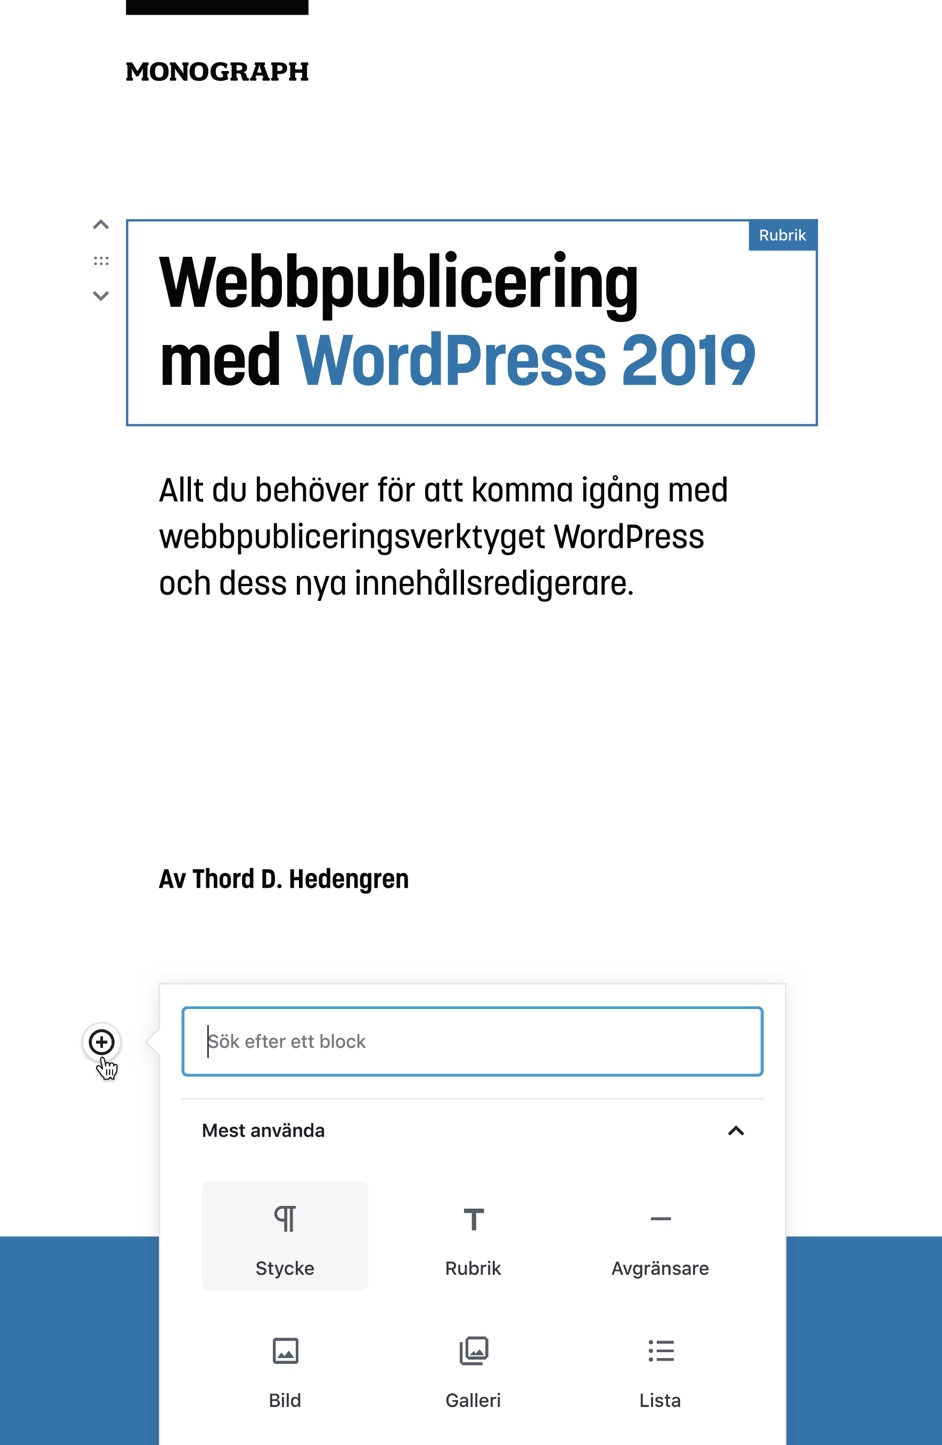 🇸🇪 Webbpublicering med WordPress 2019